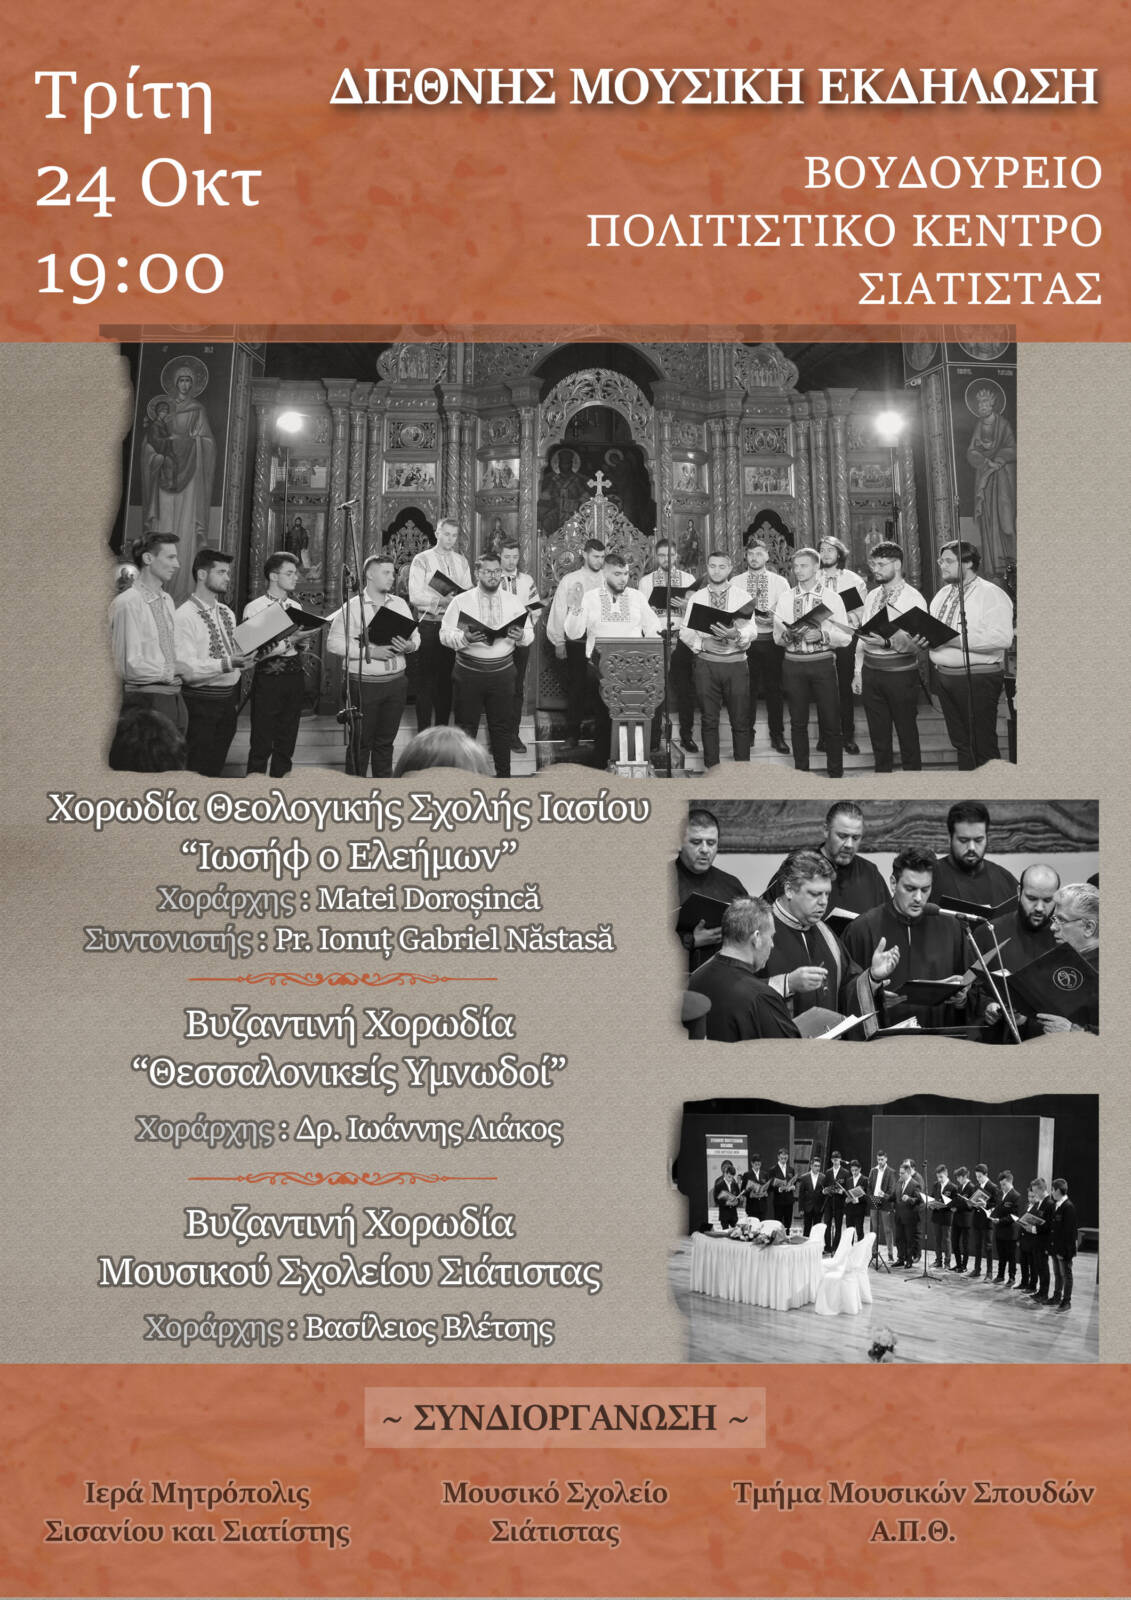 Διεθνής Μουσική Εκδήλωση με συμμετοχή του Μουσικού Σχολείου Σιάτιστας